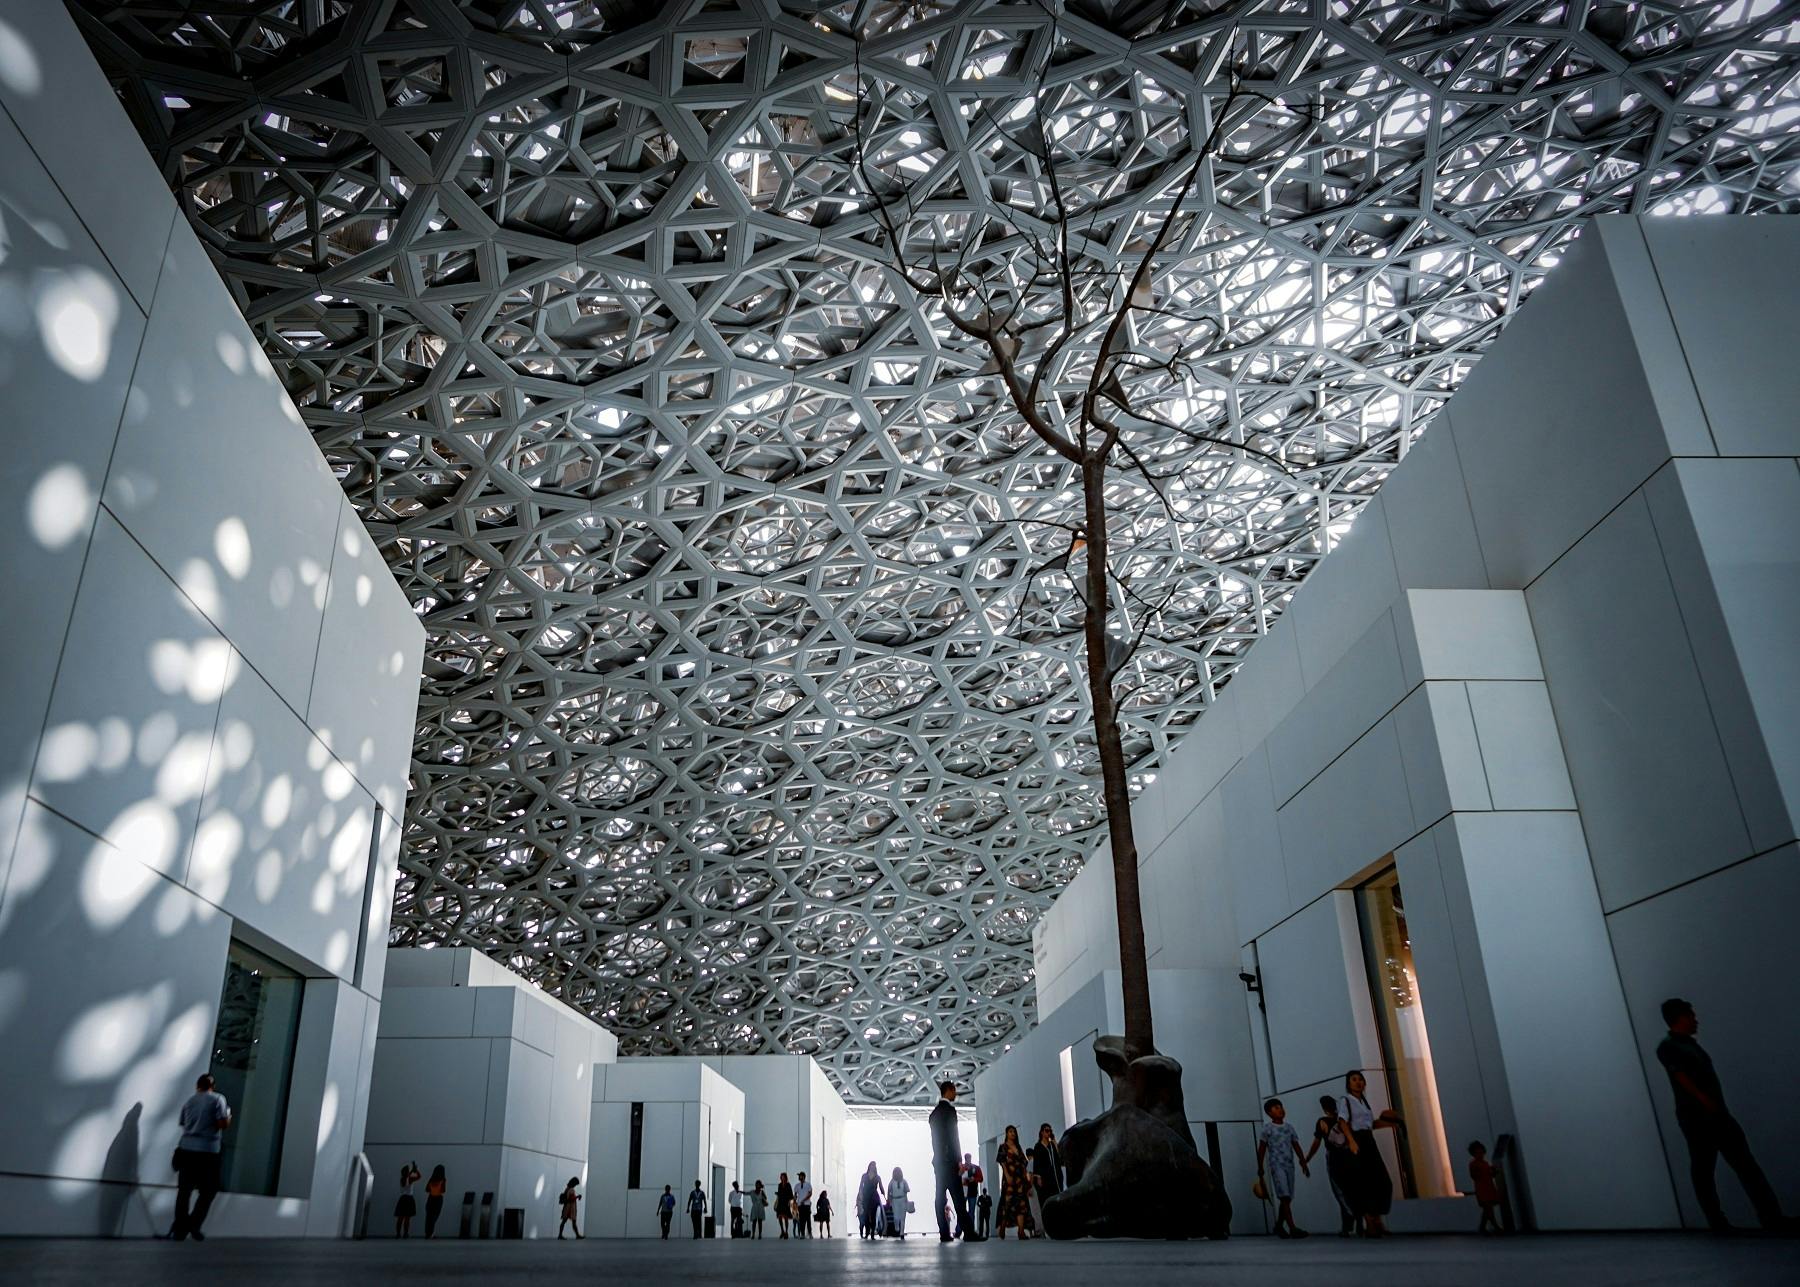 Ganztägige Abu Dhabi Tour mit Louvre von Abu Dhabi